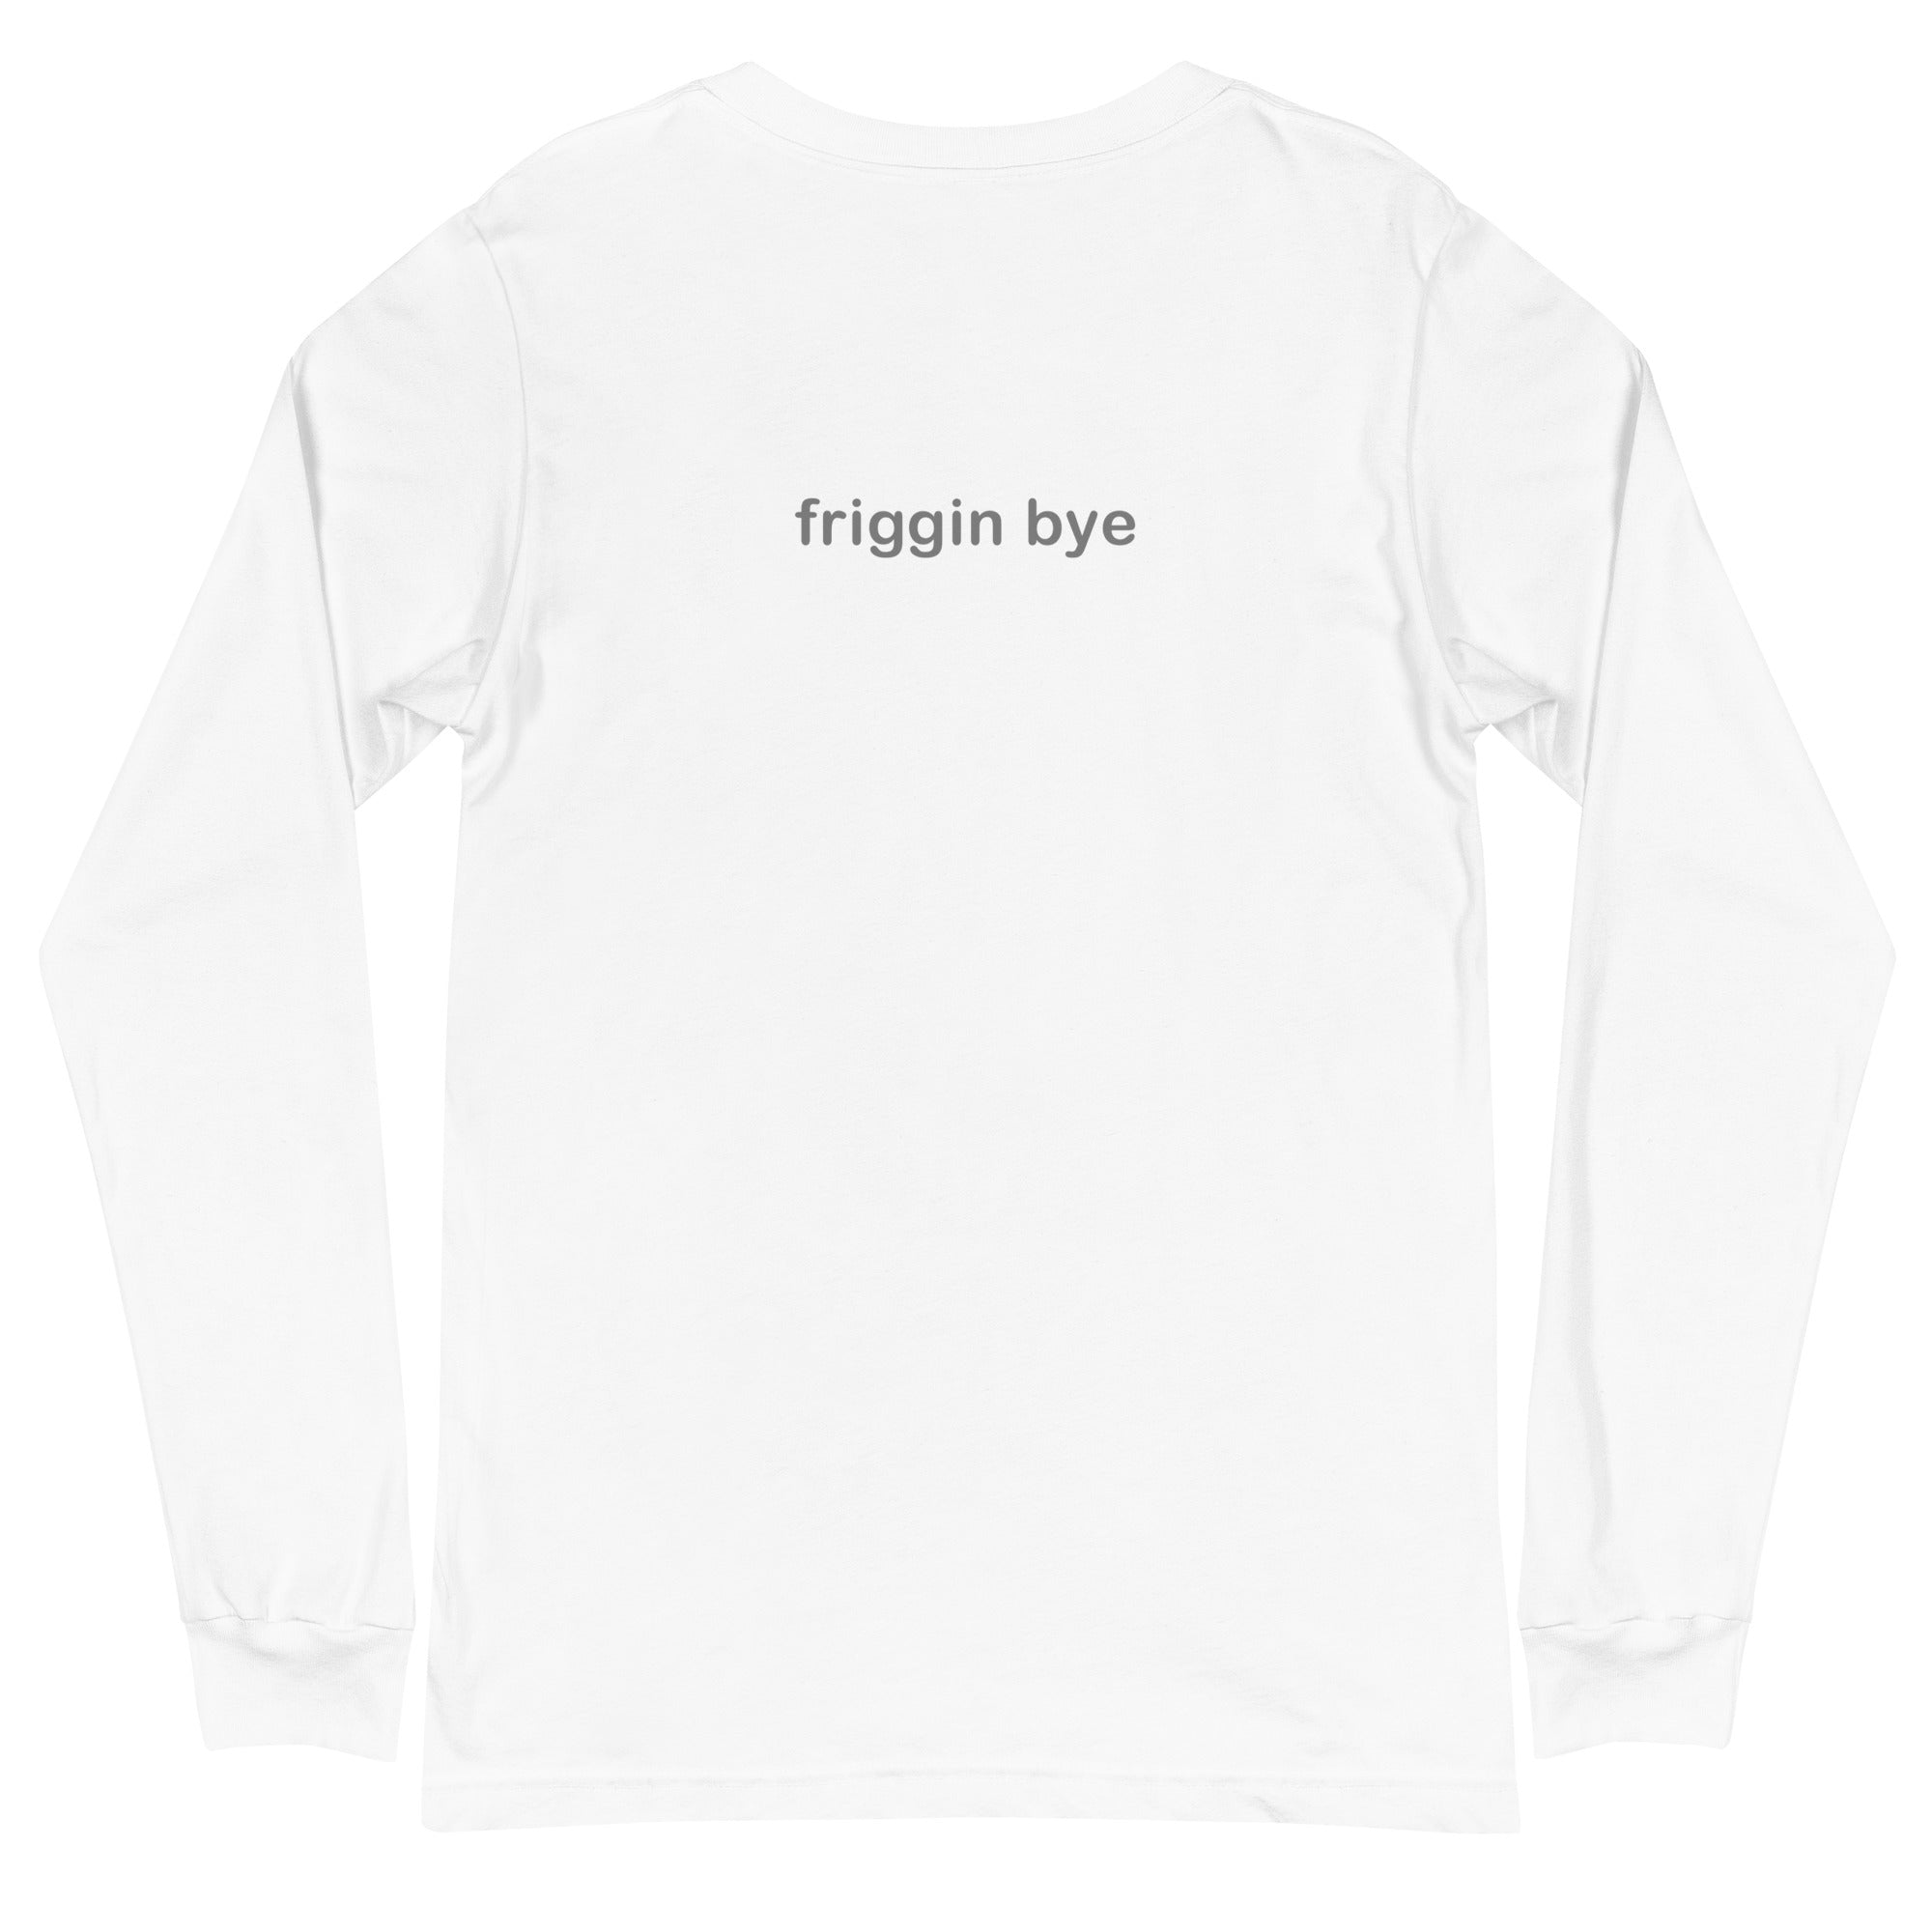 "Friggin Hi, Friggin Bye" Grey Text Adult Unisex Long Sleeve Tee